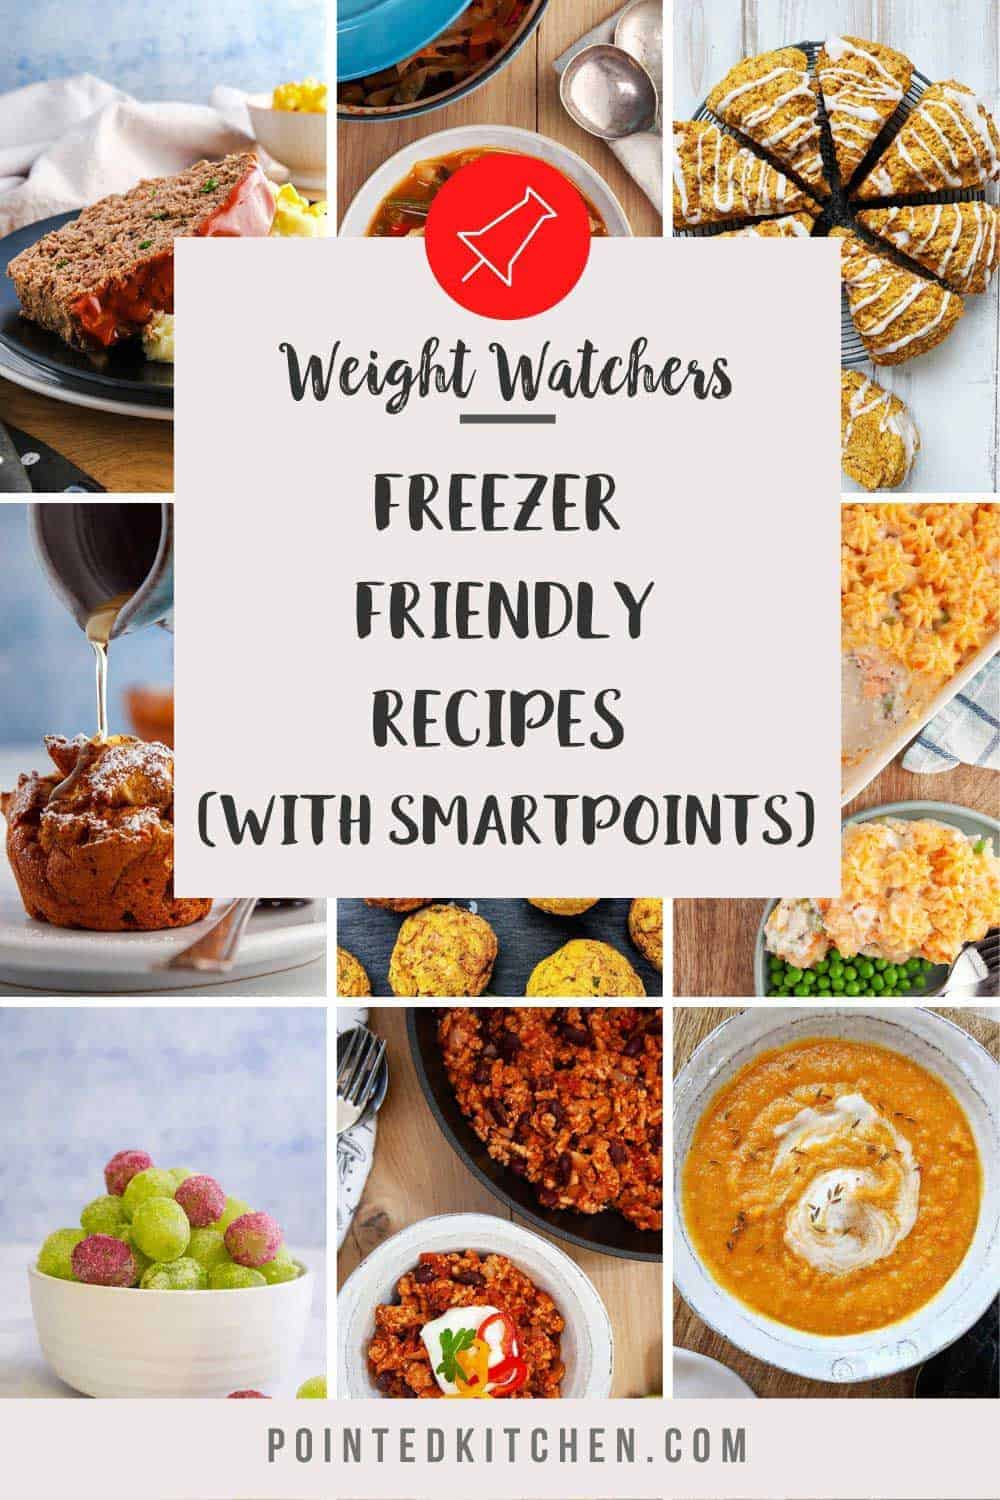 Freezer Friendly Weight Watchers Recipes | Pointed Kitchen